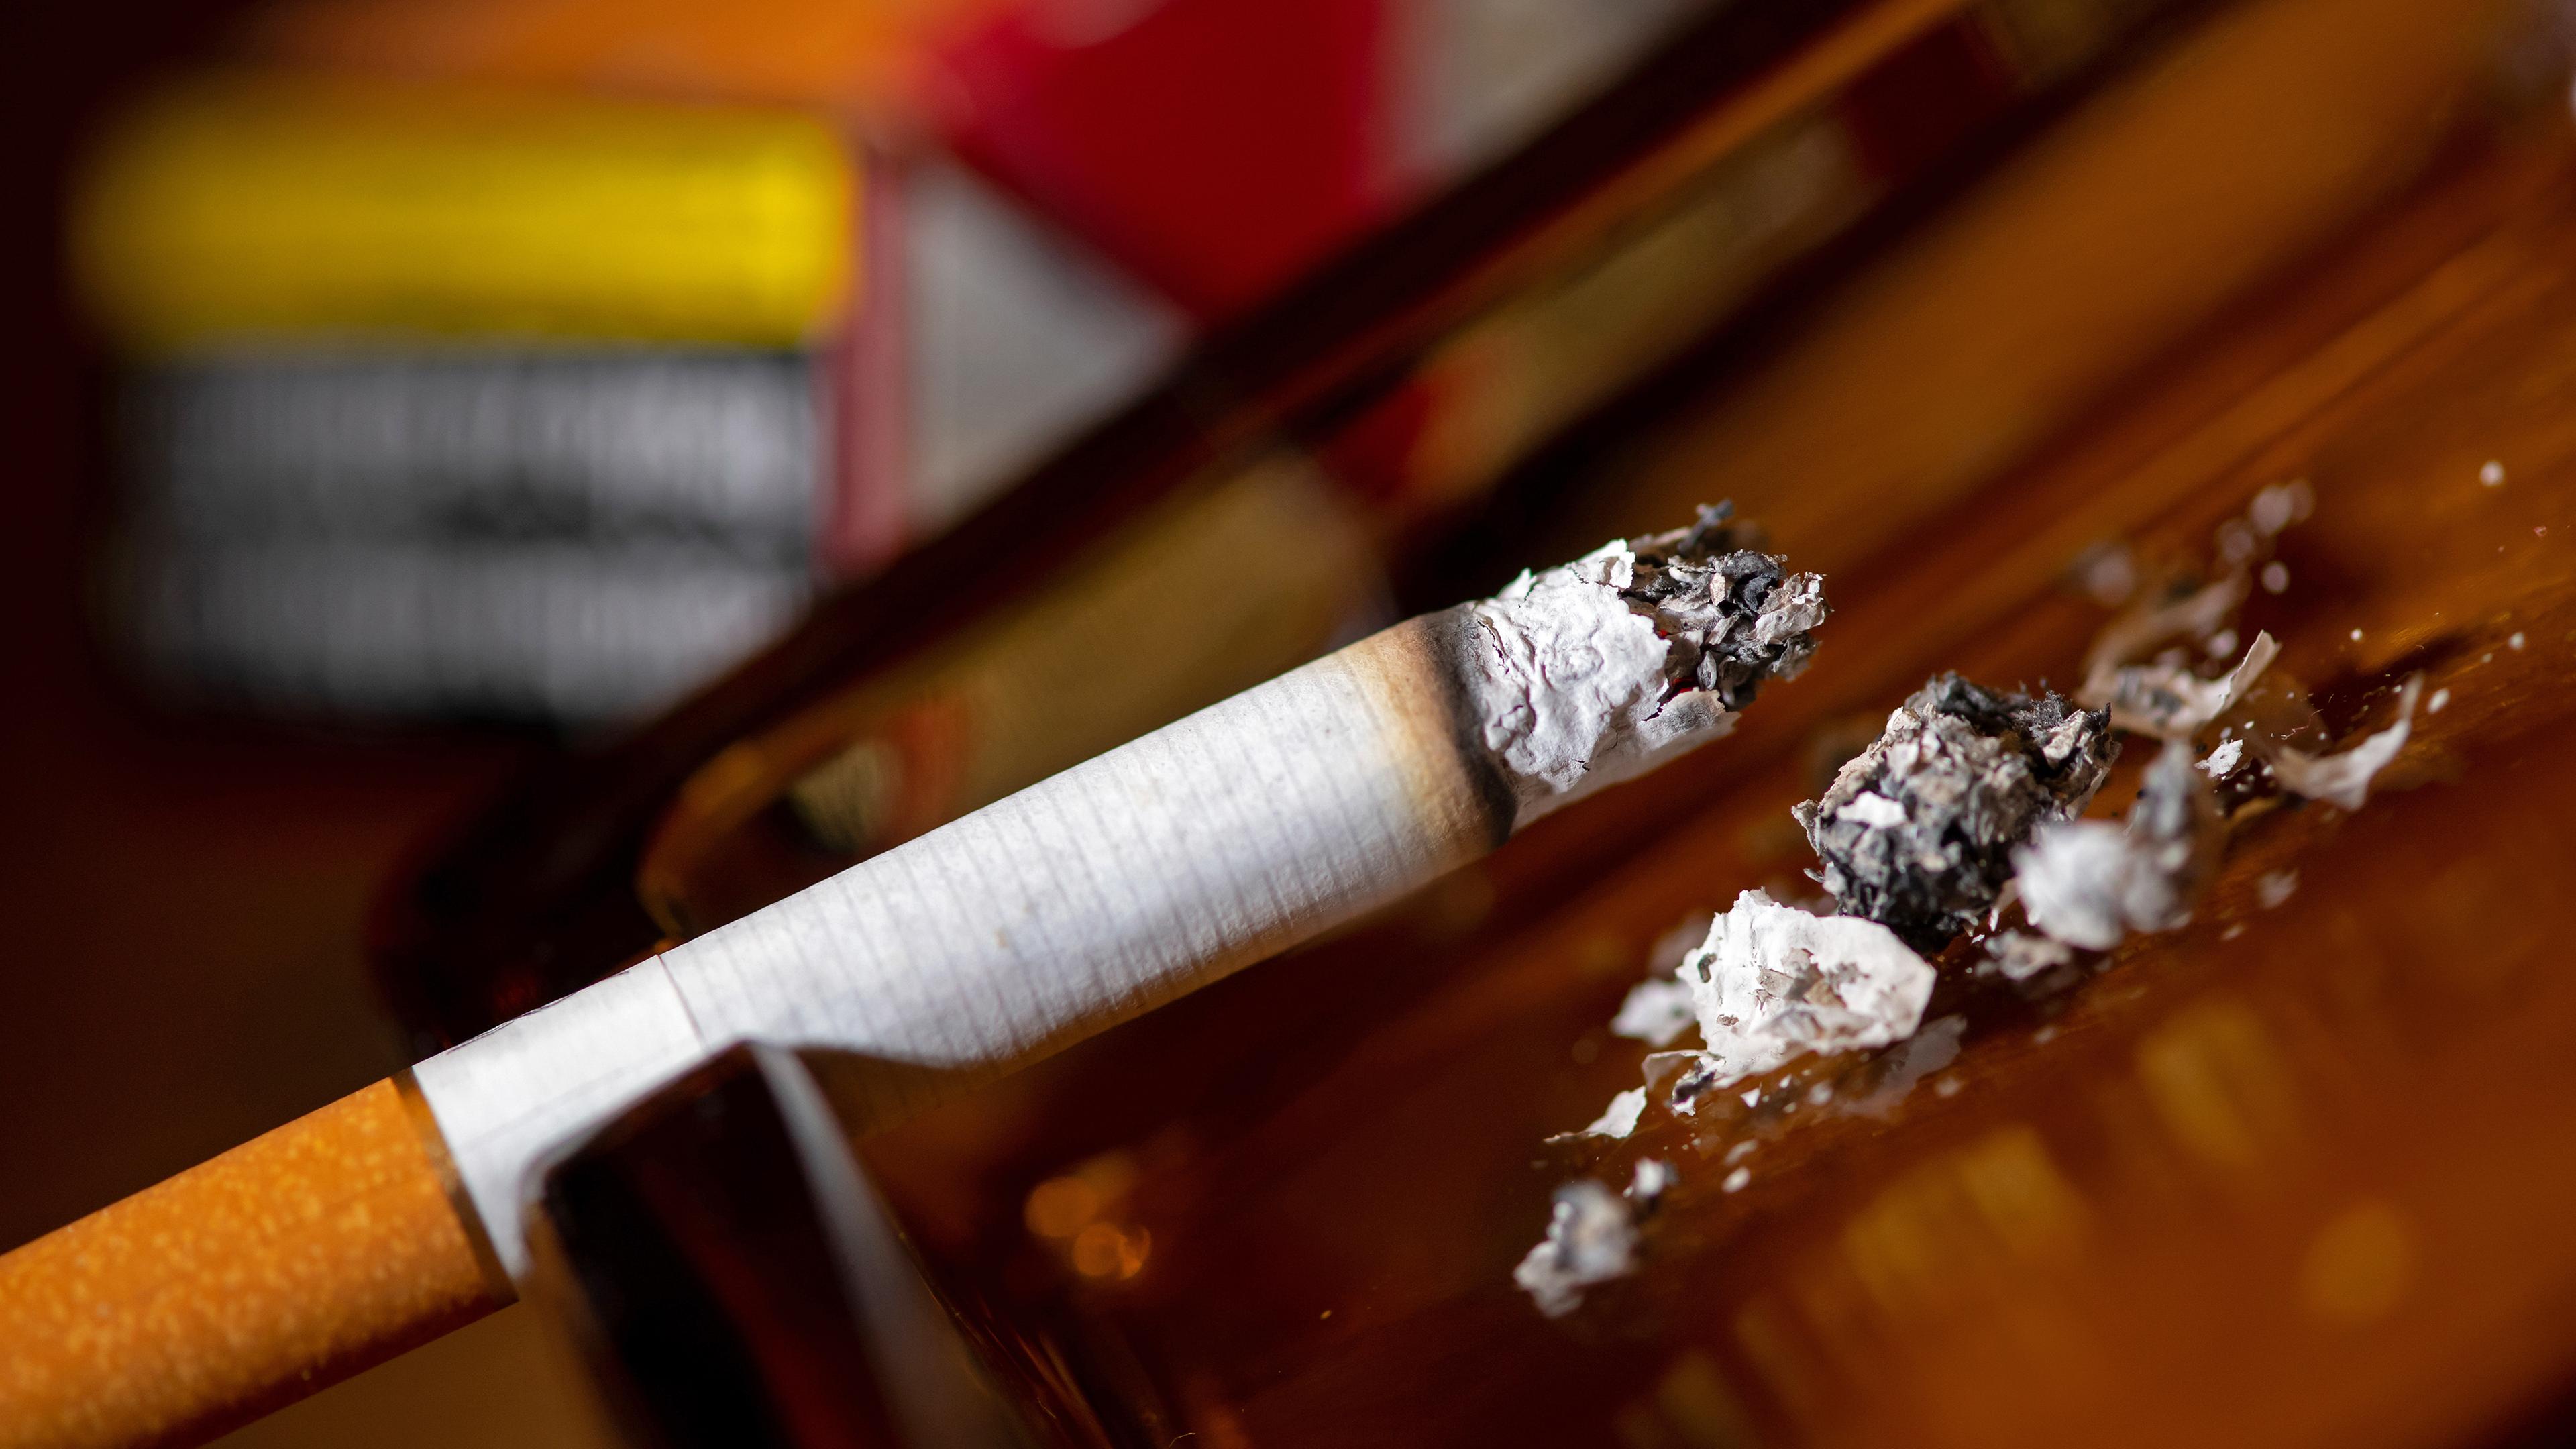 Eine brennende Zigarette liegt in einem Aschenbecher, aufgenommen am 08.12.2021